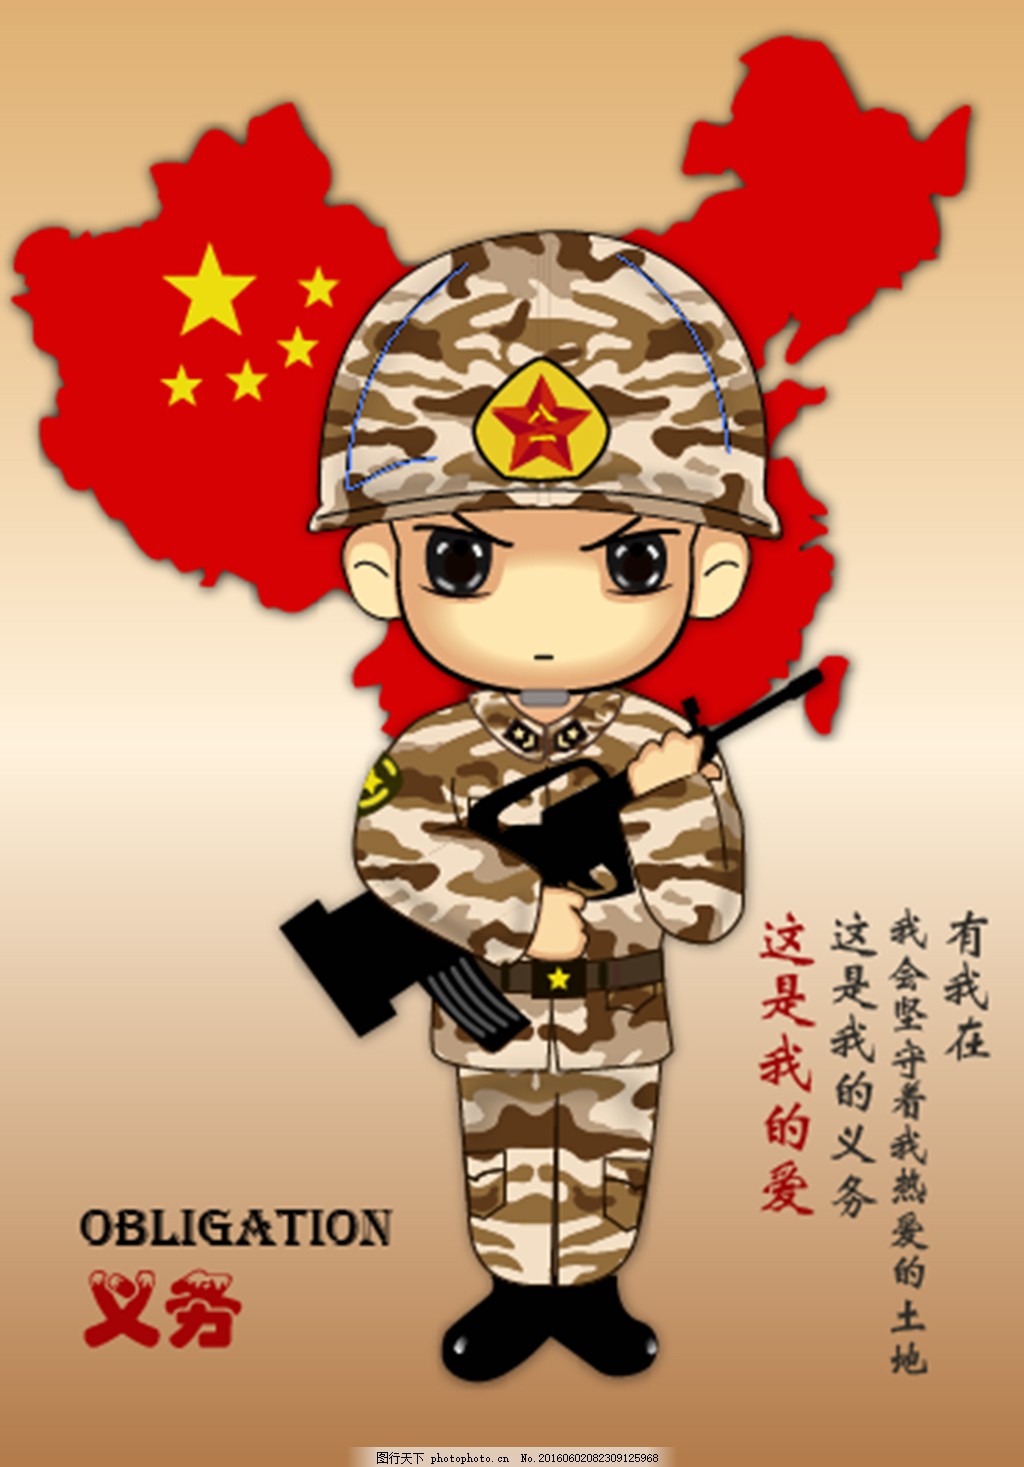 Tentara Kartun Memberi Hormat PNG grafik gambar unduh gratis - Lovepik